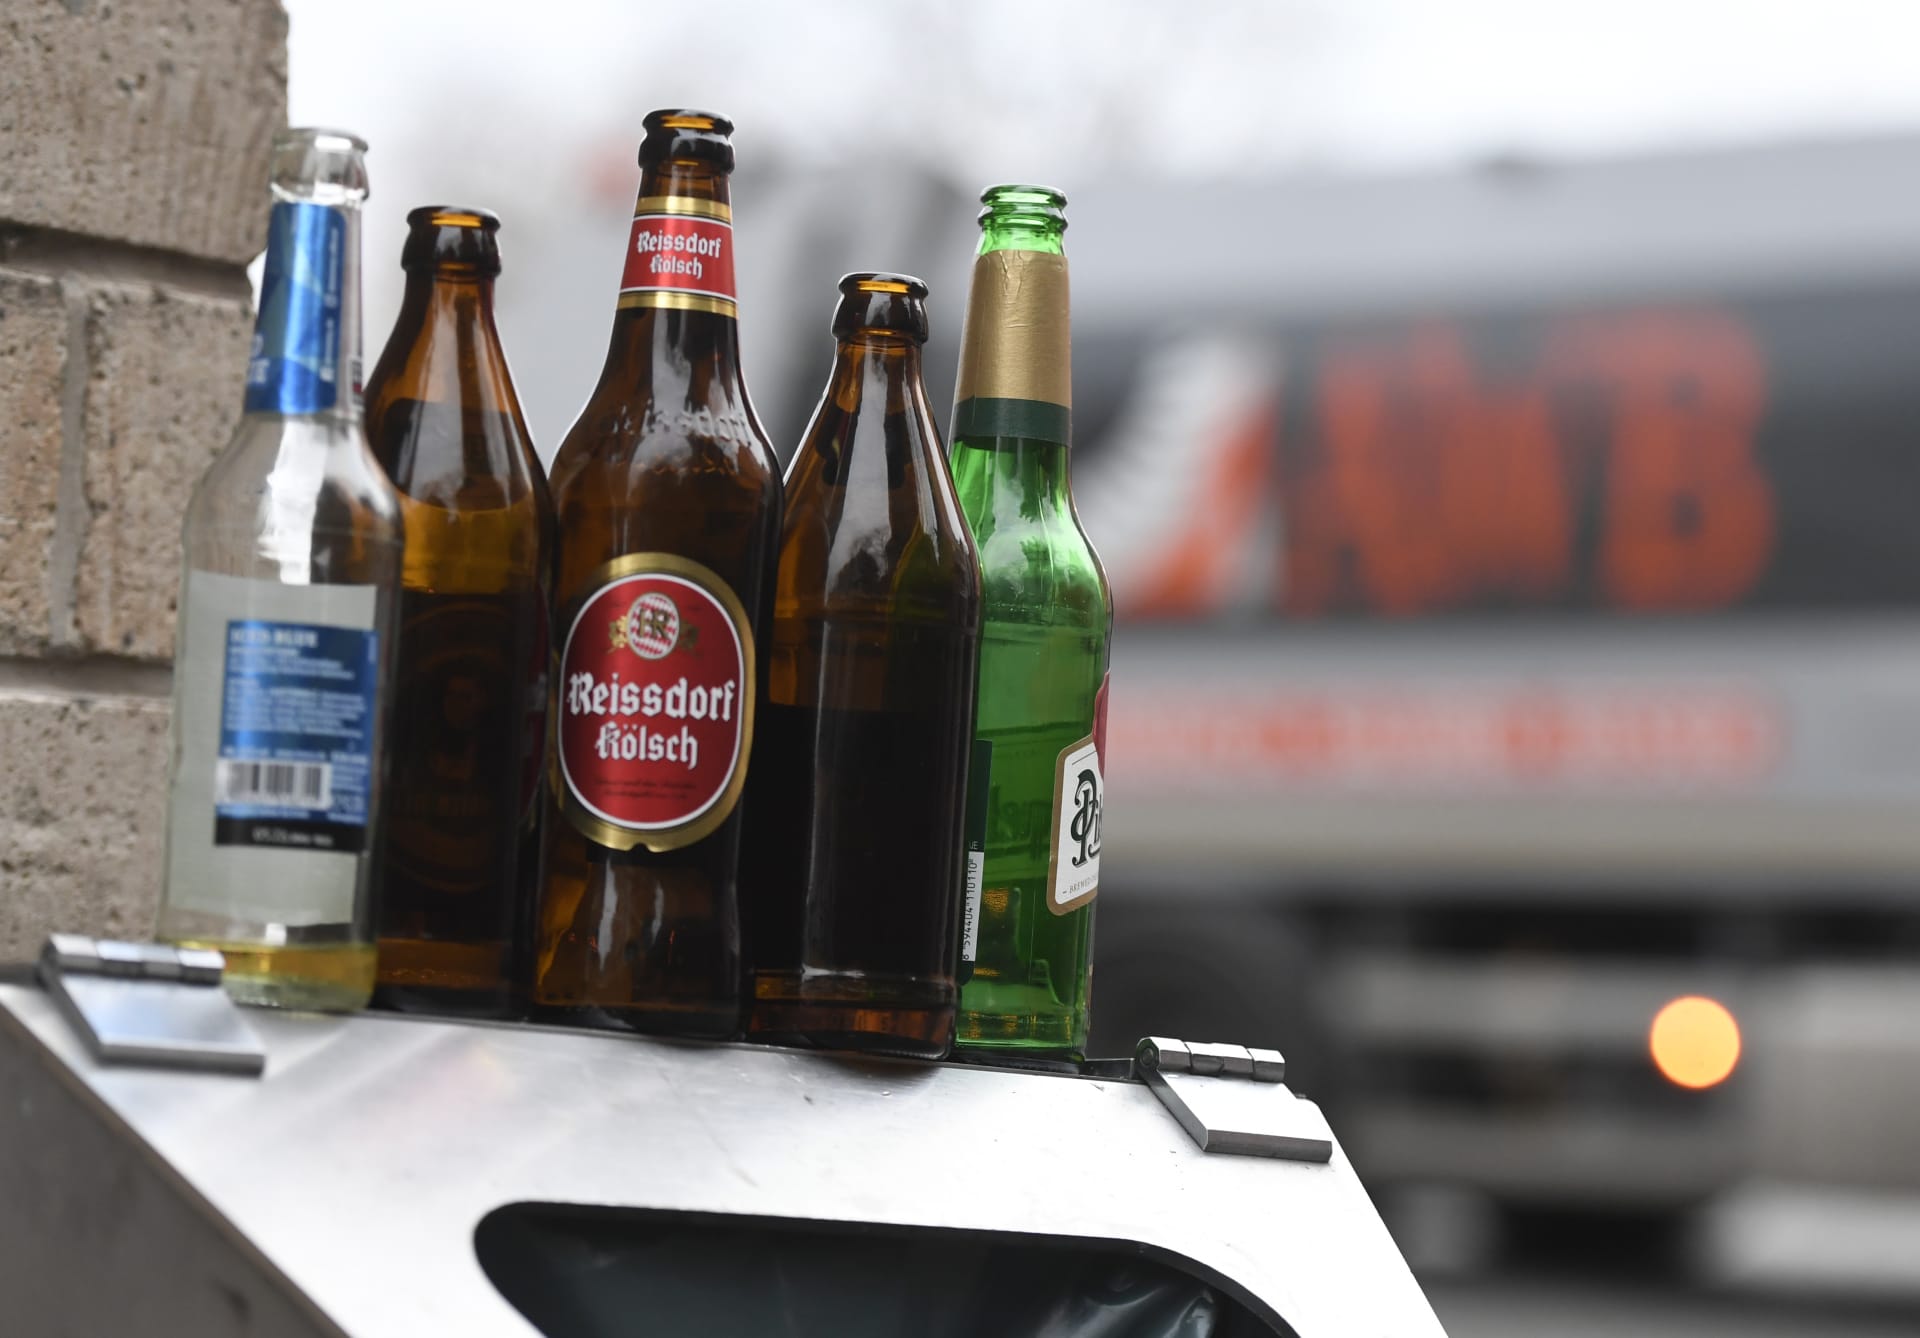 I toto je obrázek současného Německa, kdy pivní láhve nekončí v obchodech, přestože jsou zálohované, ale na odpadkovém koši. 